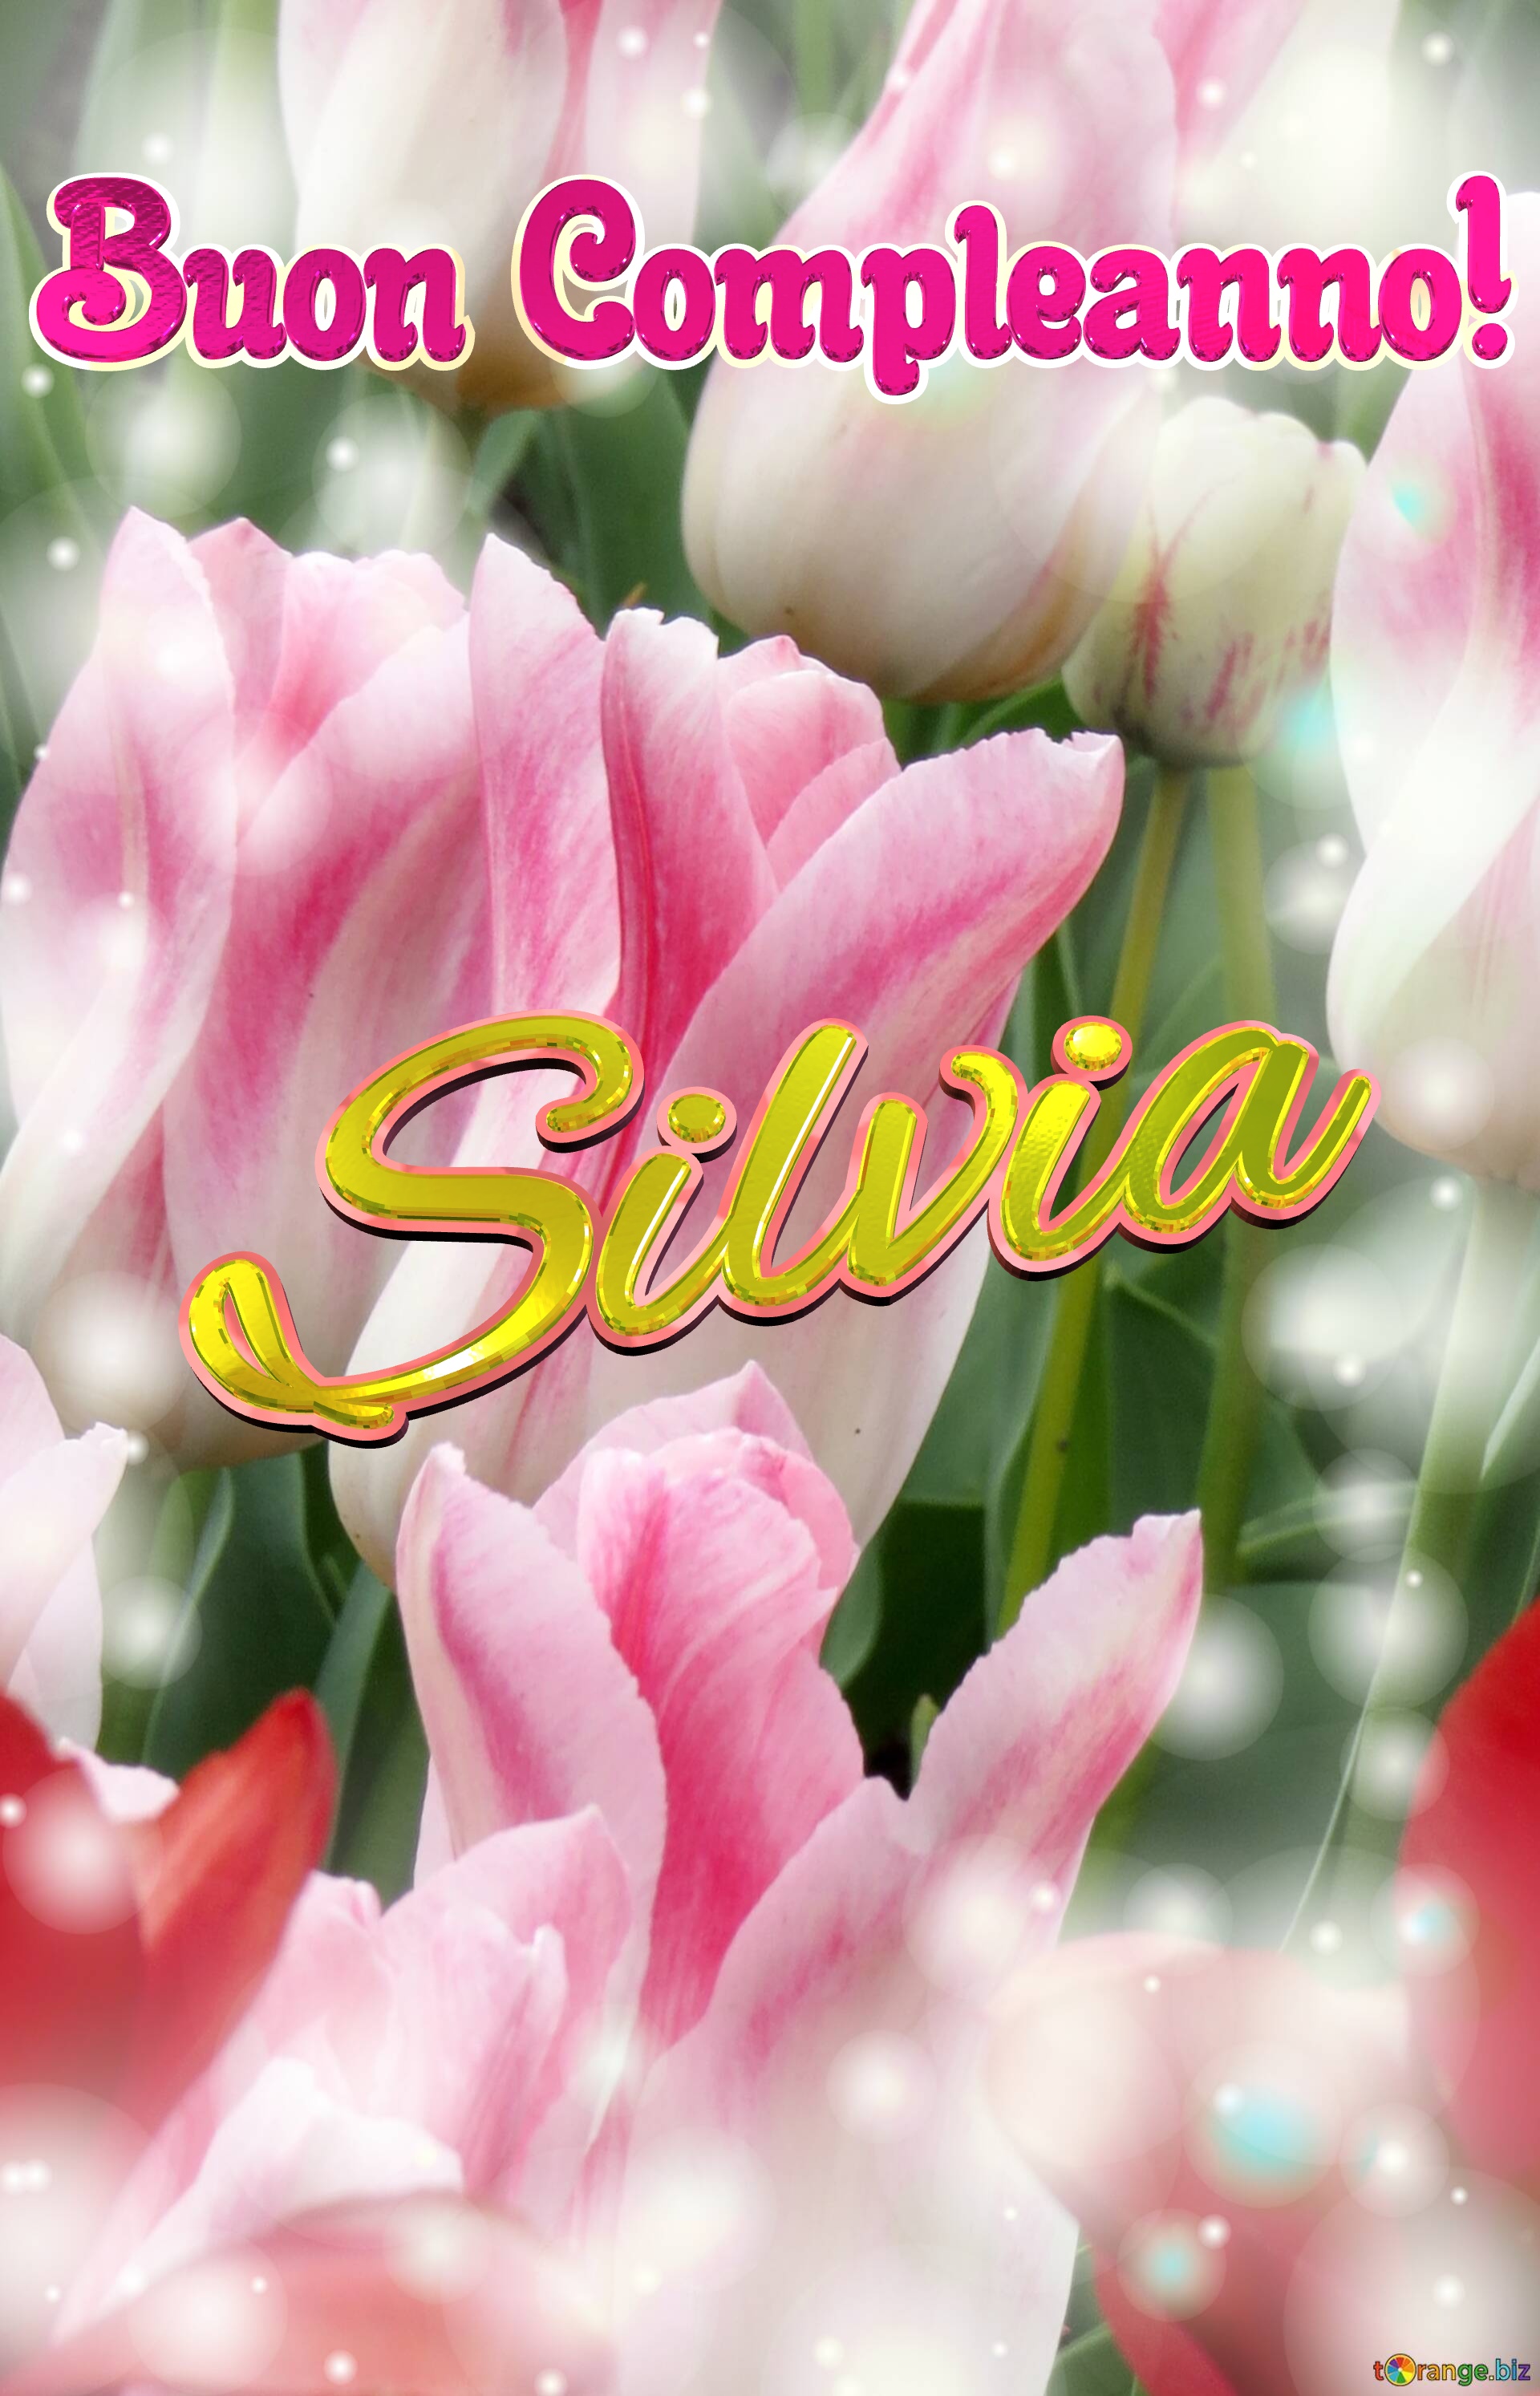 Buon Compleanno! Silvia  La bellezza dei tulipani è un richiamo alla purezza della vita, auguri per una vita pura e bella. №0